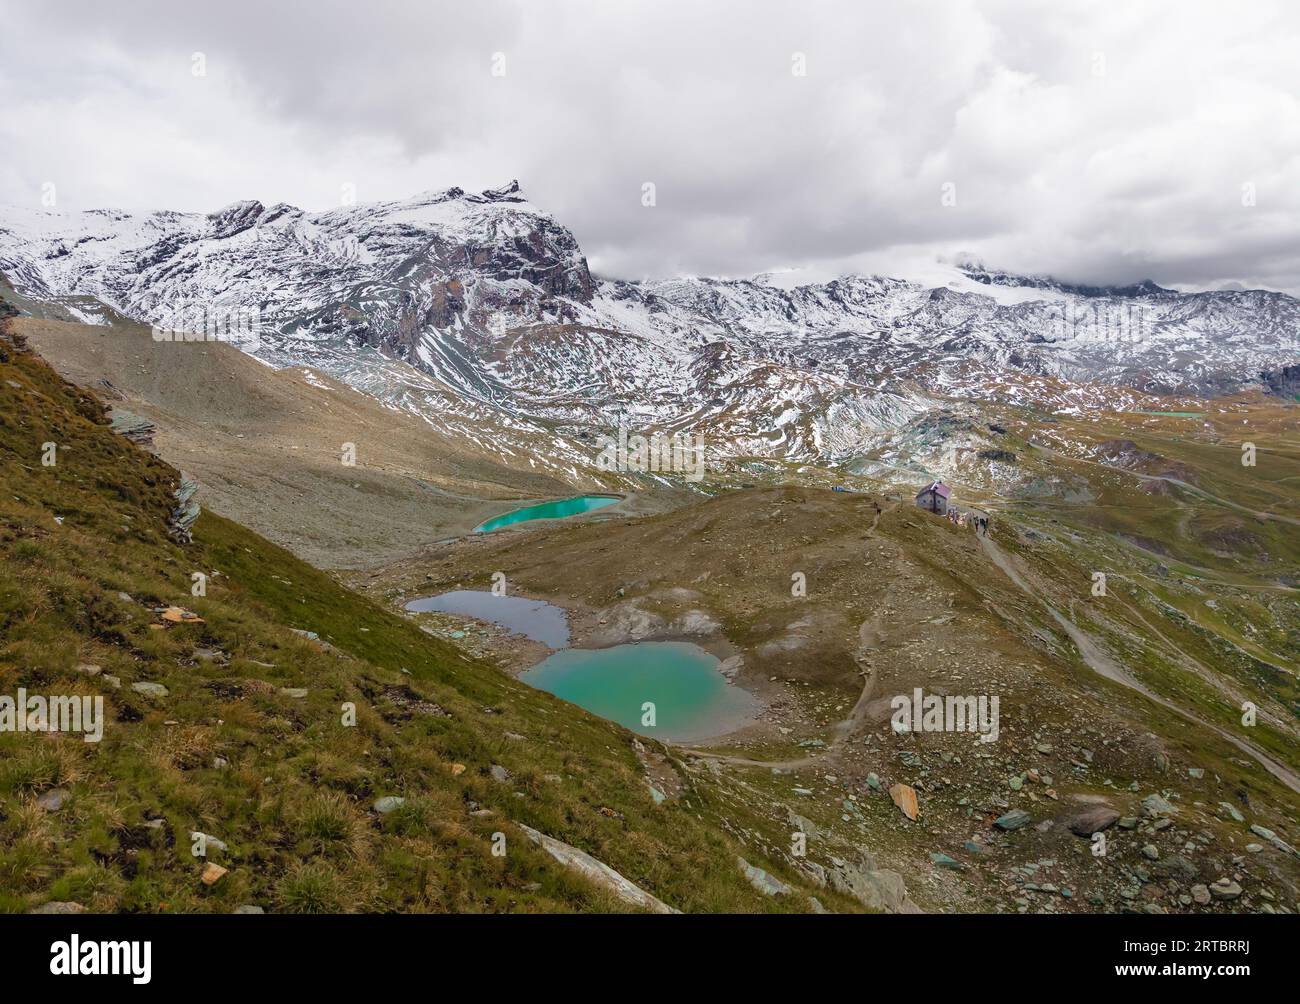 Breuil-Cervinia (Italia) - Una vista sulla città montana di Cervinia con la cima delle Alpi Cervino, i sentieri escursionistici e il lago turistico Lago Blu, Valle d'Aosta Foto Stock